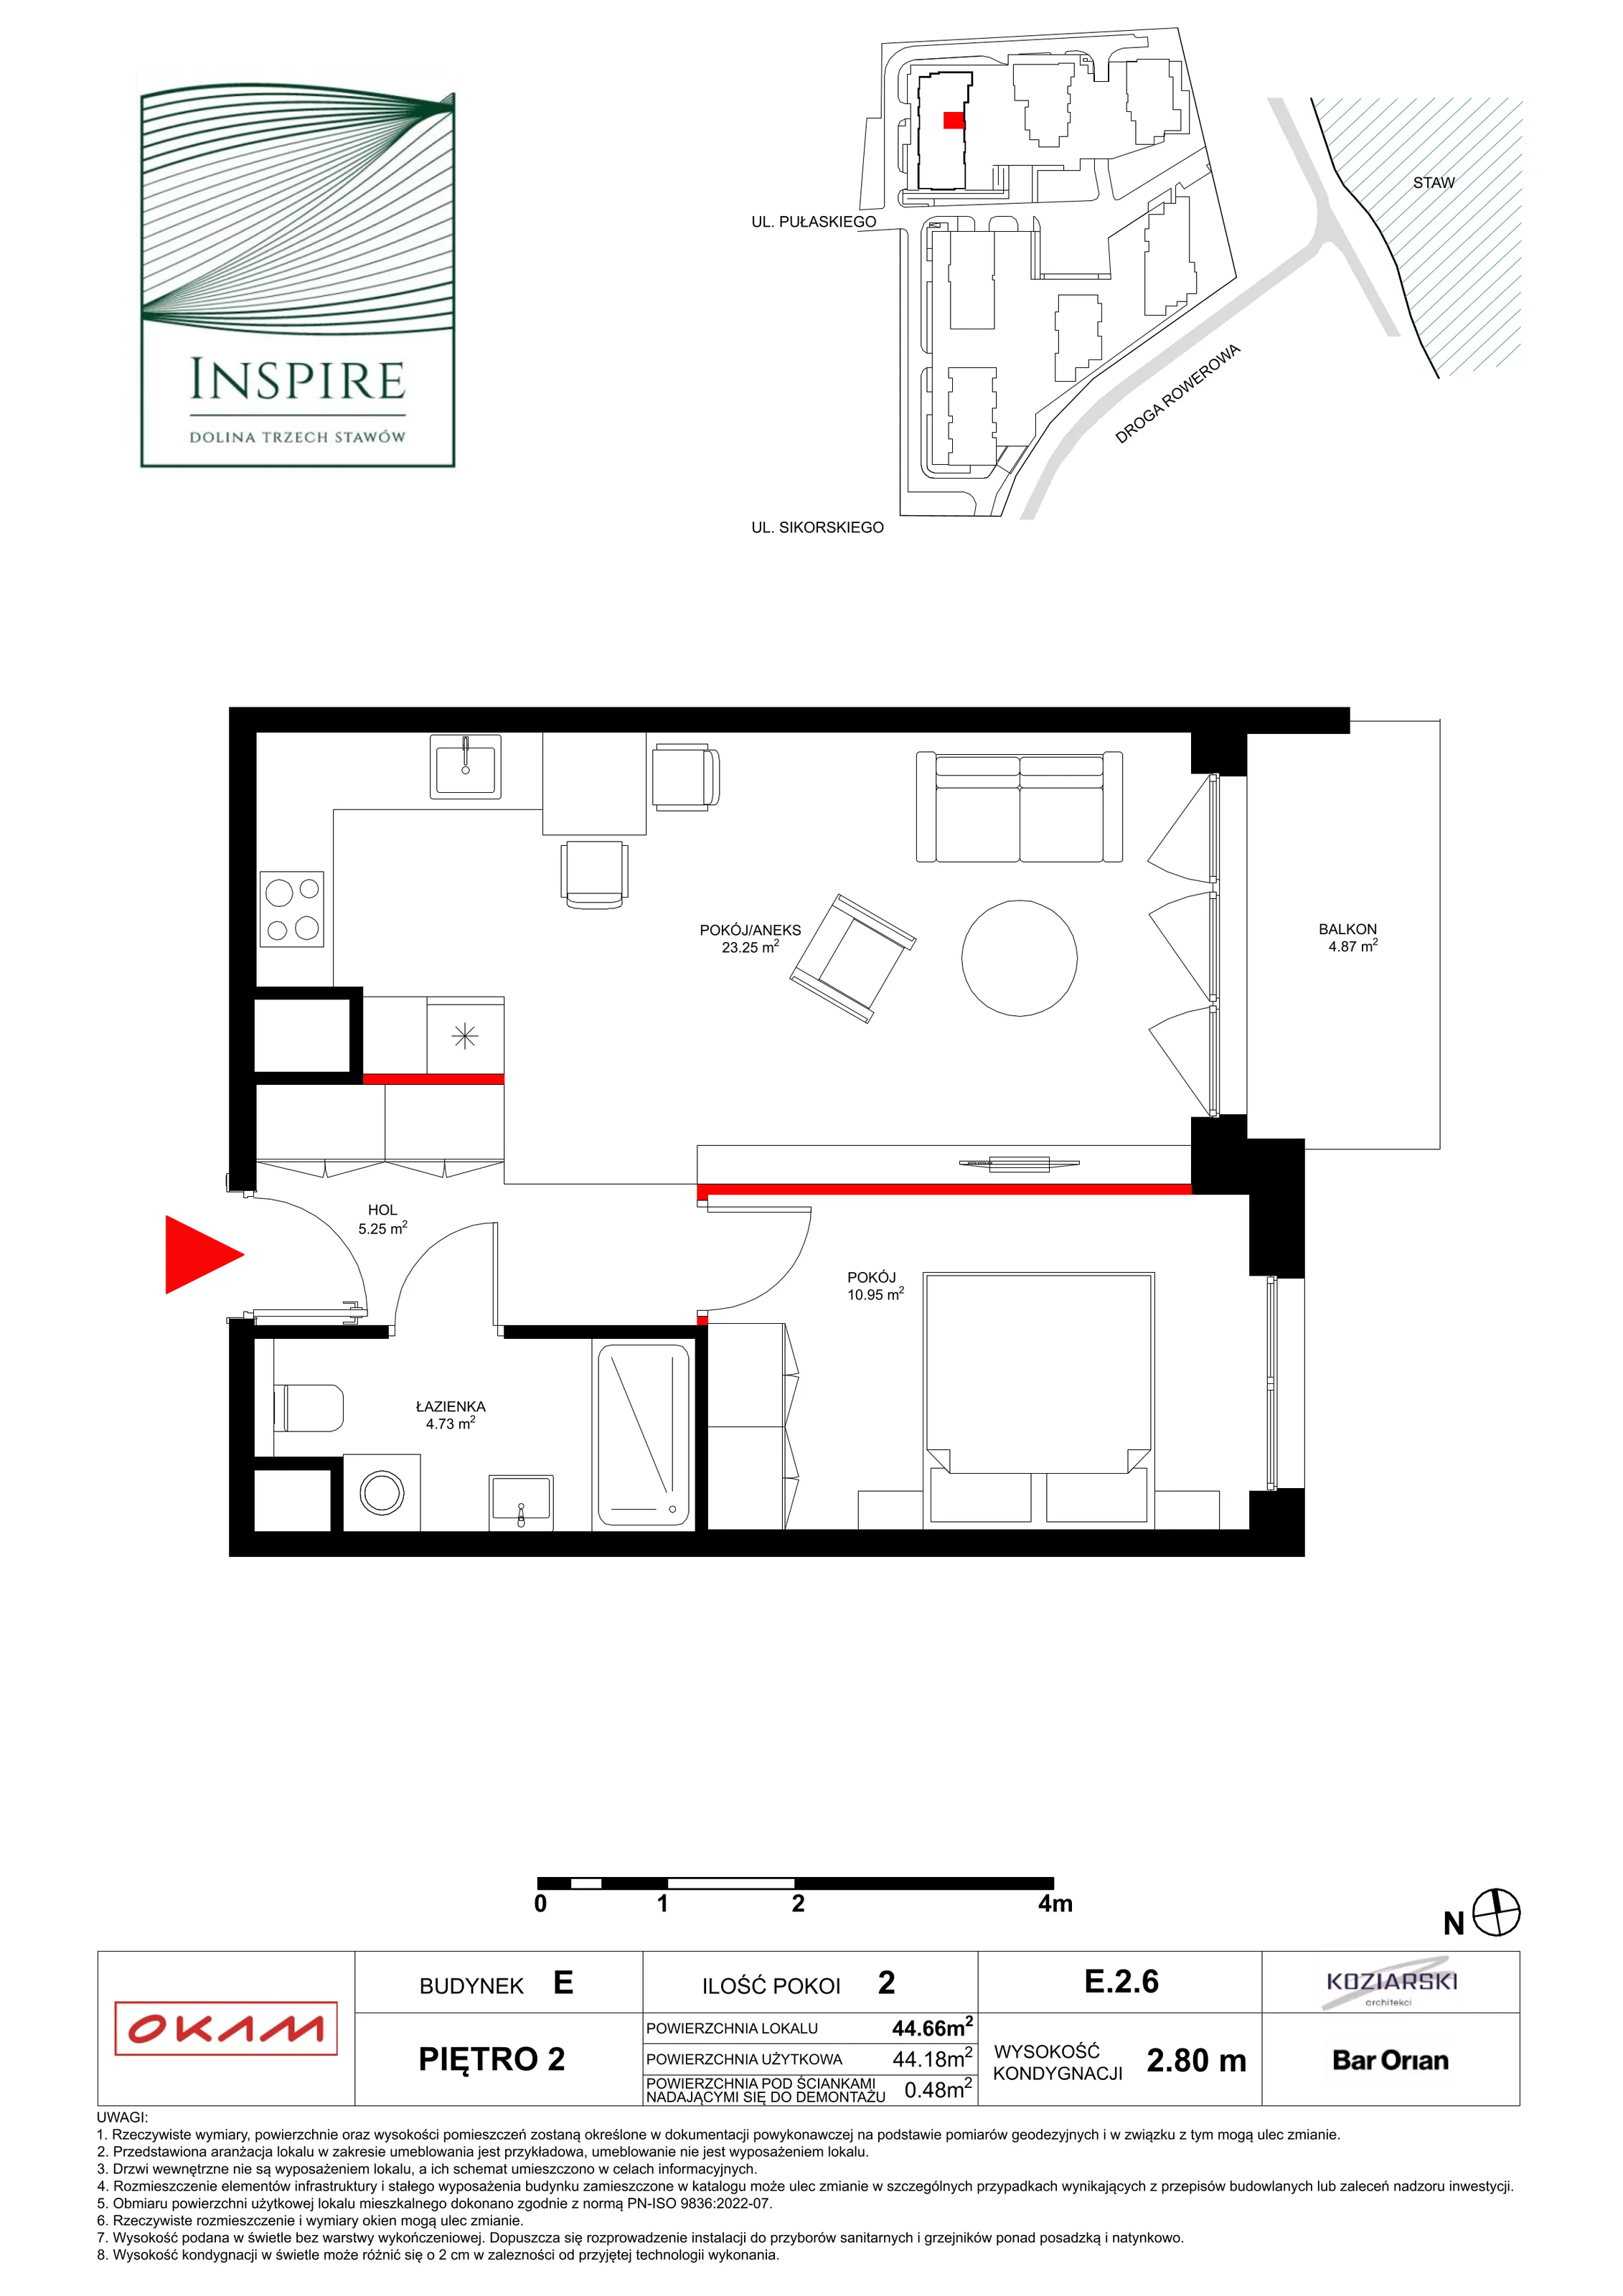 Apartament 44,18 m², piętro 2, oferta nr E.2.6, Inspire, Katowice, Osiedle Paderewskiego-Muchowiec, Dolina Trzech Stawów, ul. gen. Sikorskiego 41